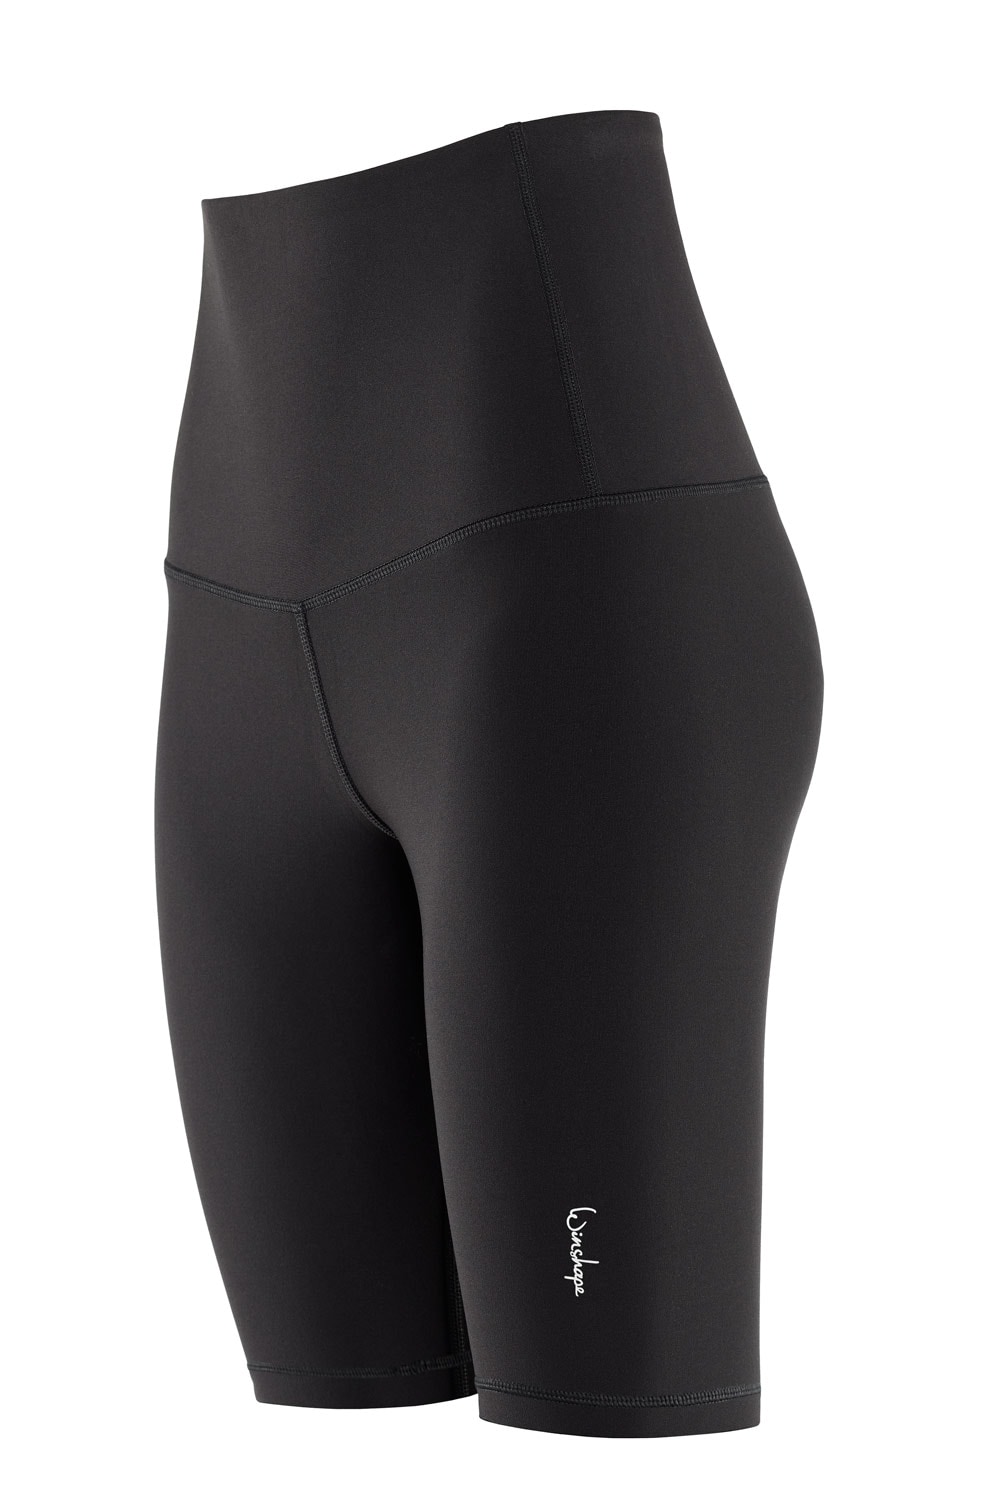 »Functional Shorts OTTO High Waist Biker Comfort online bei bestellen HWL412C«, Shorts Winshape